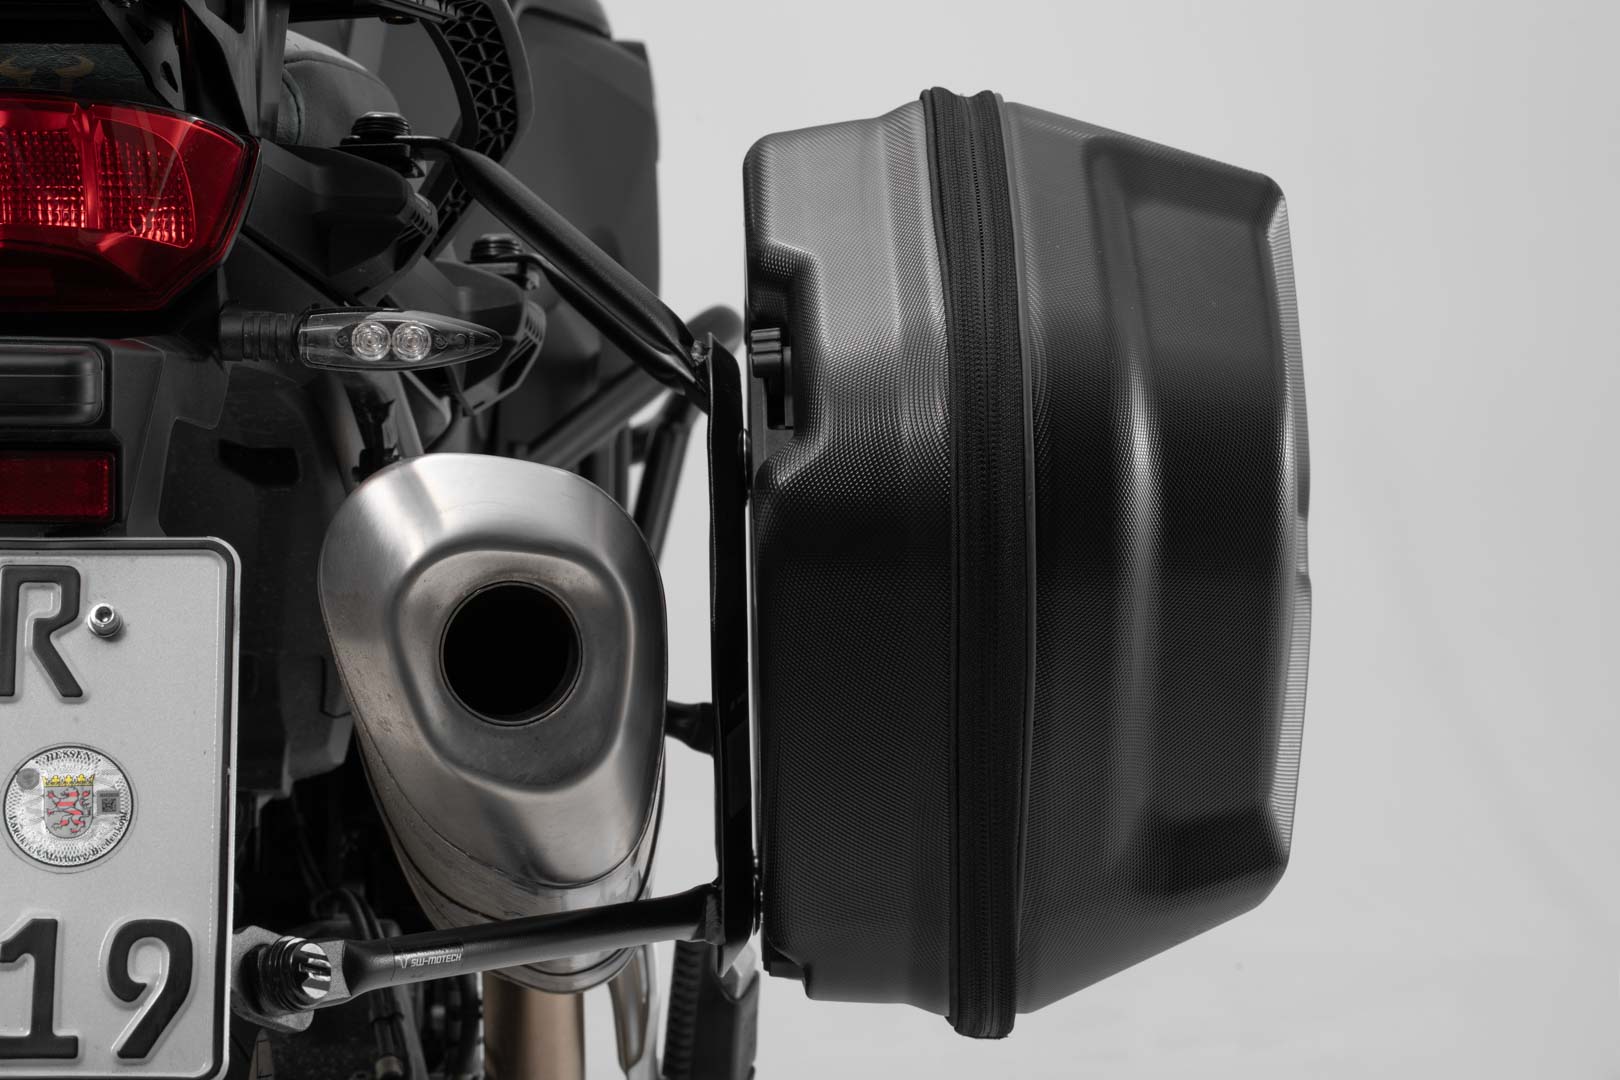 AERO ABS side case system 2x25 litre Ducati Multistrada 1200 (10-14)